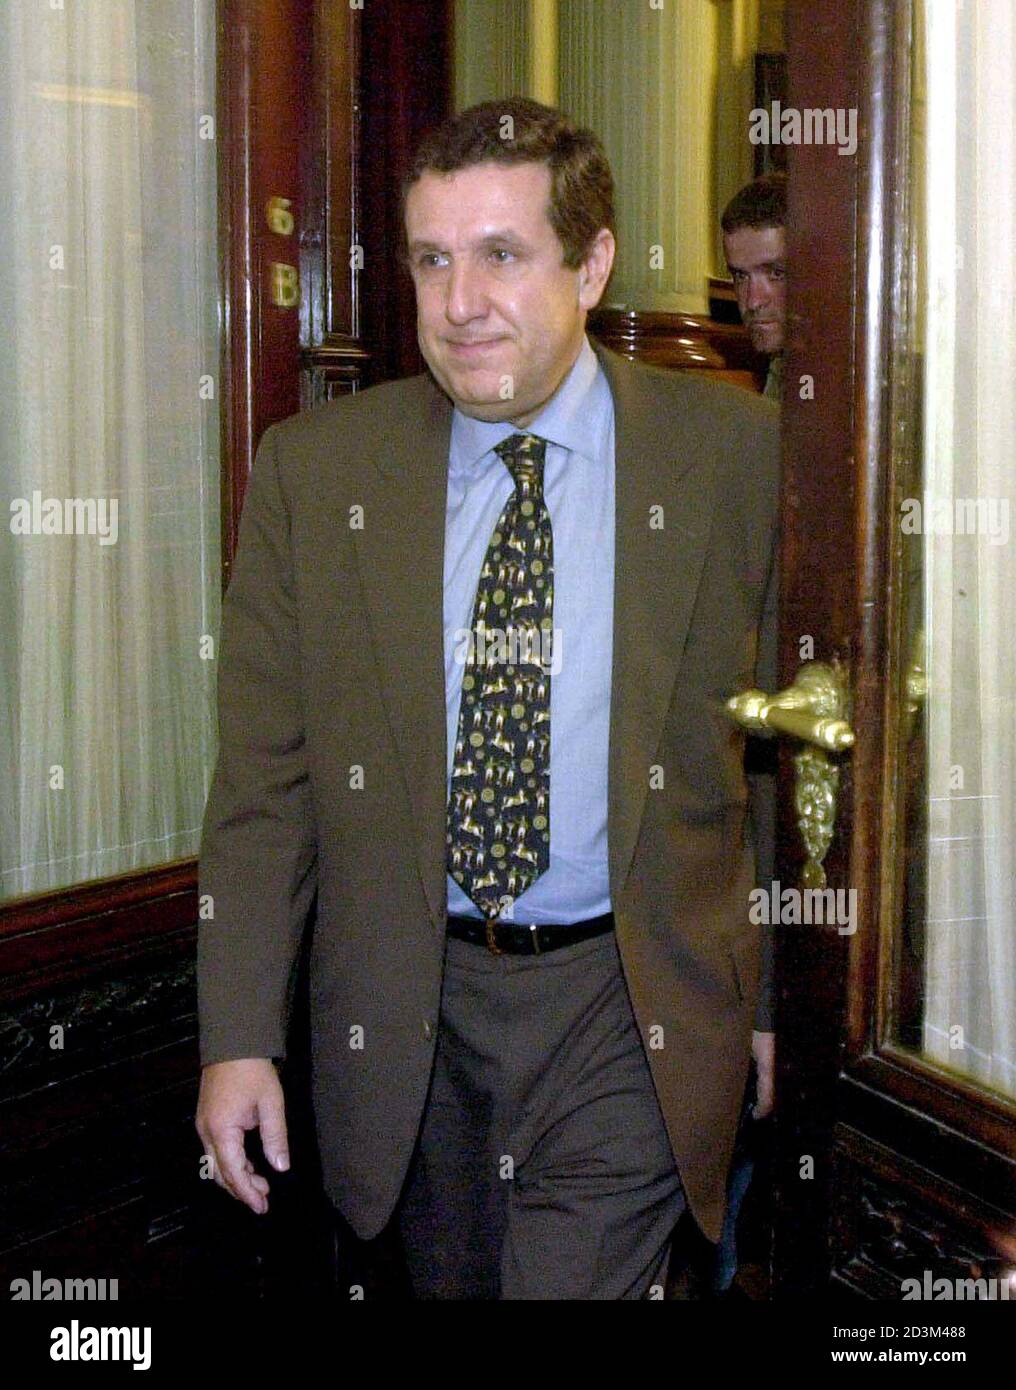 El presidente del Senado argentino Ramón Puerta del opositor Partido  Peronista, es visto salir de su oficina en el edificio del Congreso en este  archivo de fotos del 17 de diciembre de